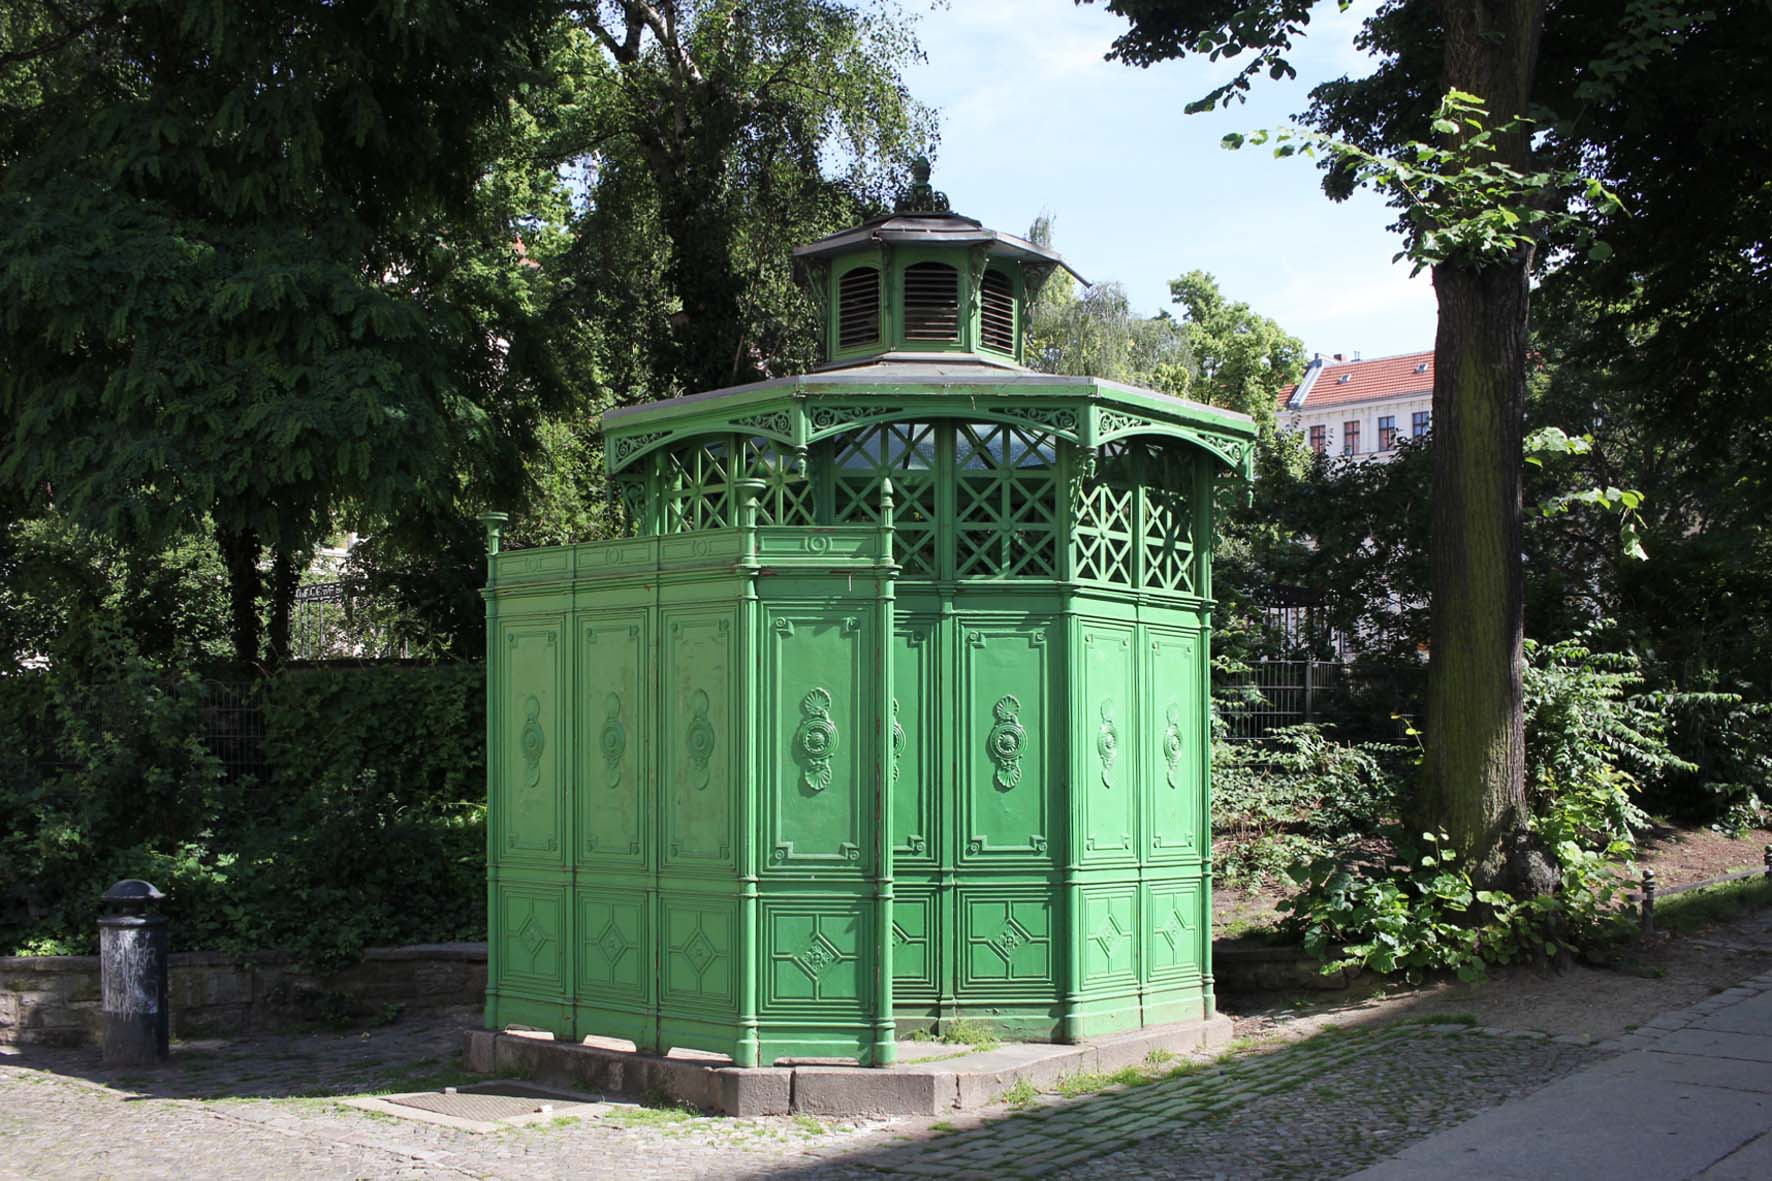 Café Achteck - Chamissoplatz - ein Exemplar von Berlin's klassischen grün-lackierten gusseisernen Bedürfnisanstalten aus dem 19. Jahrhundert